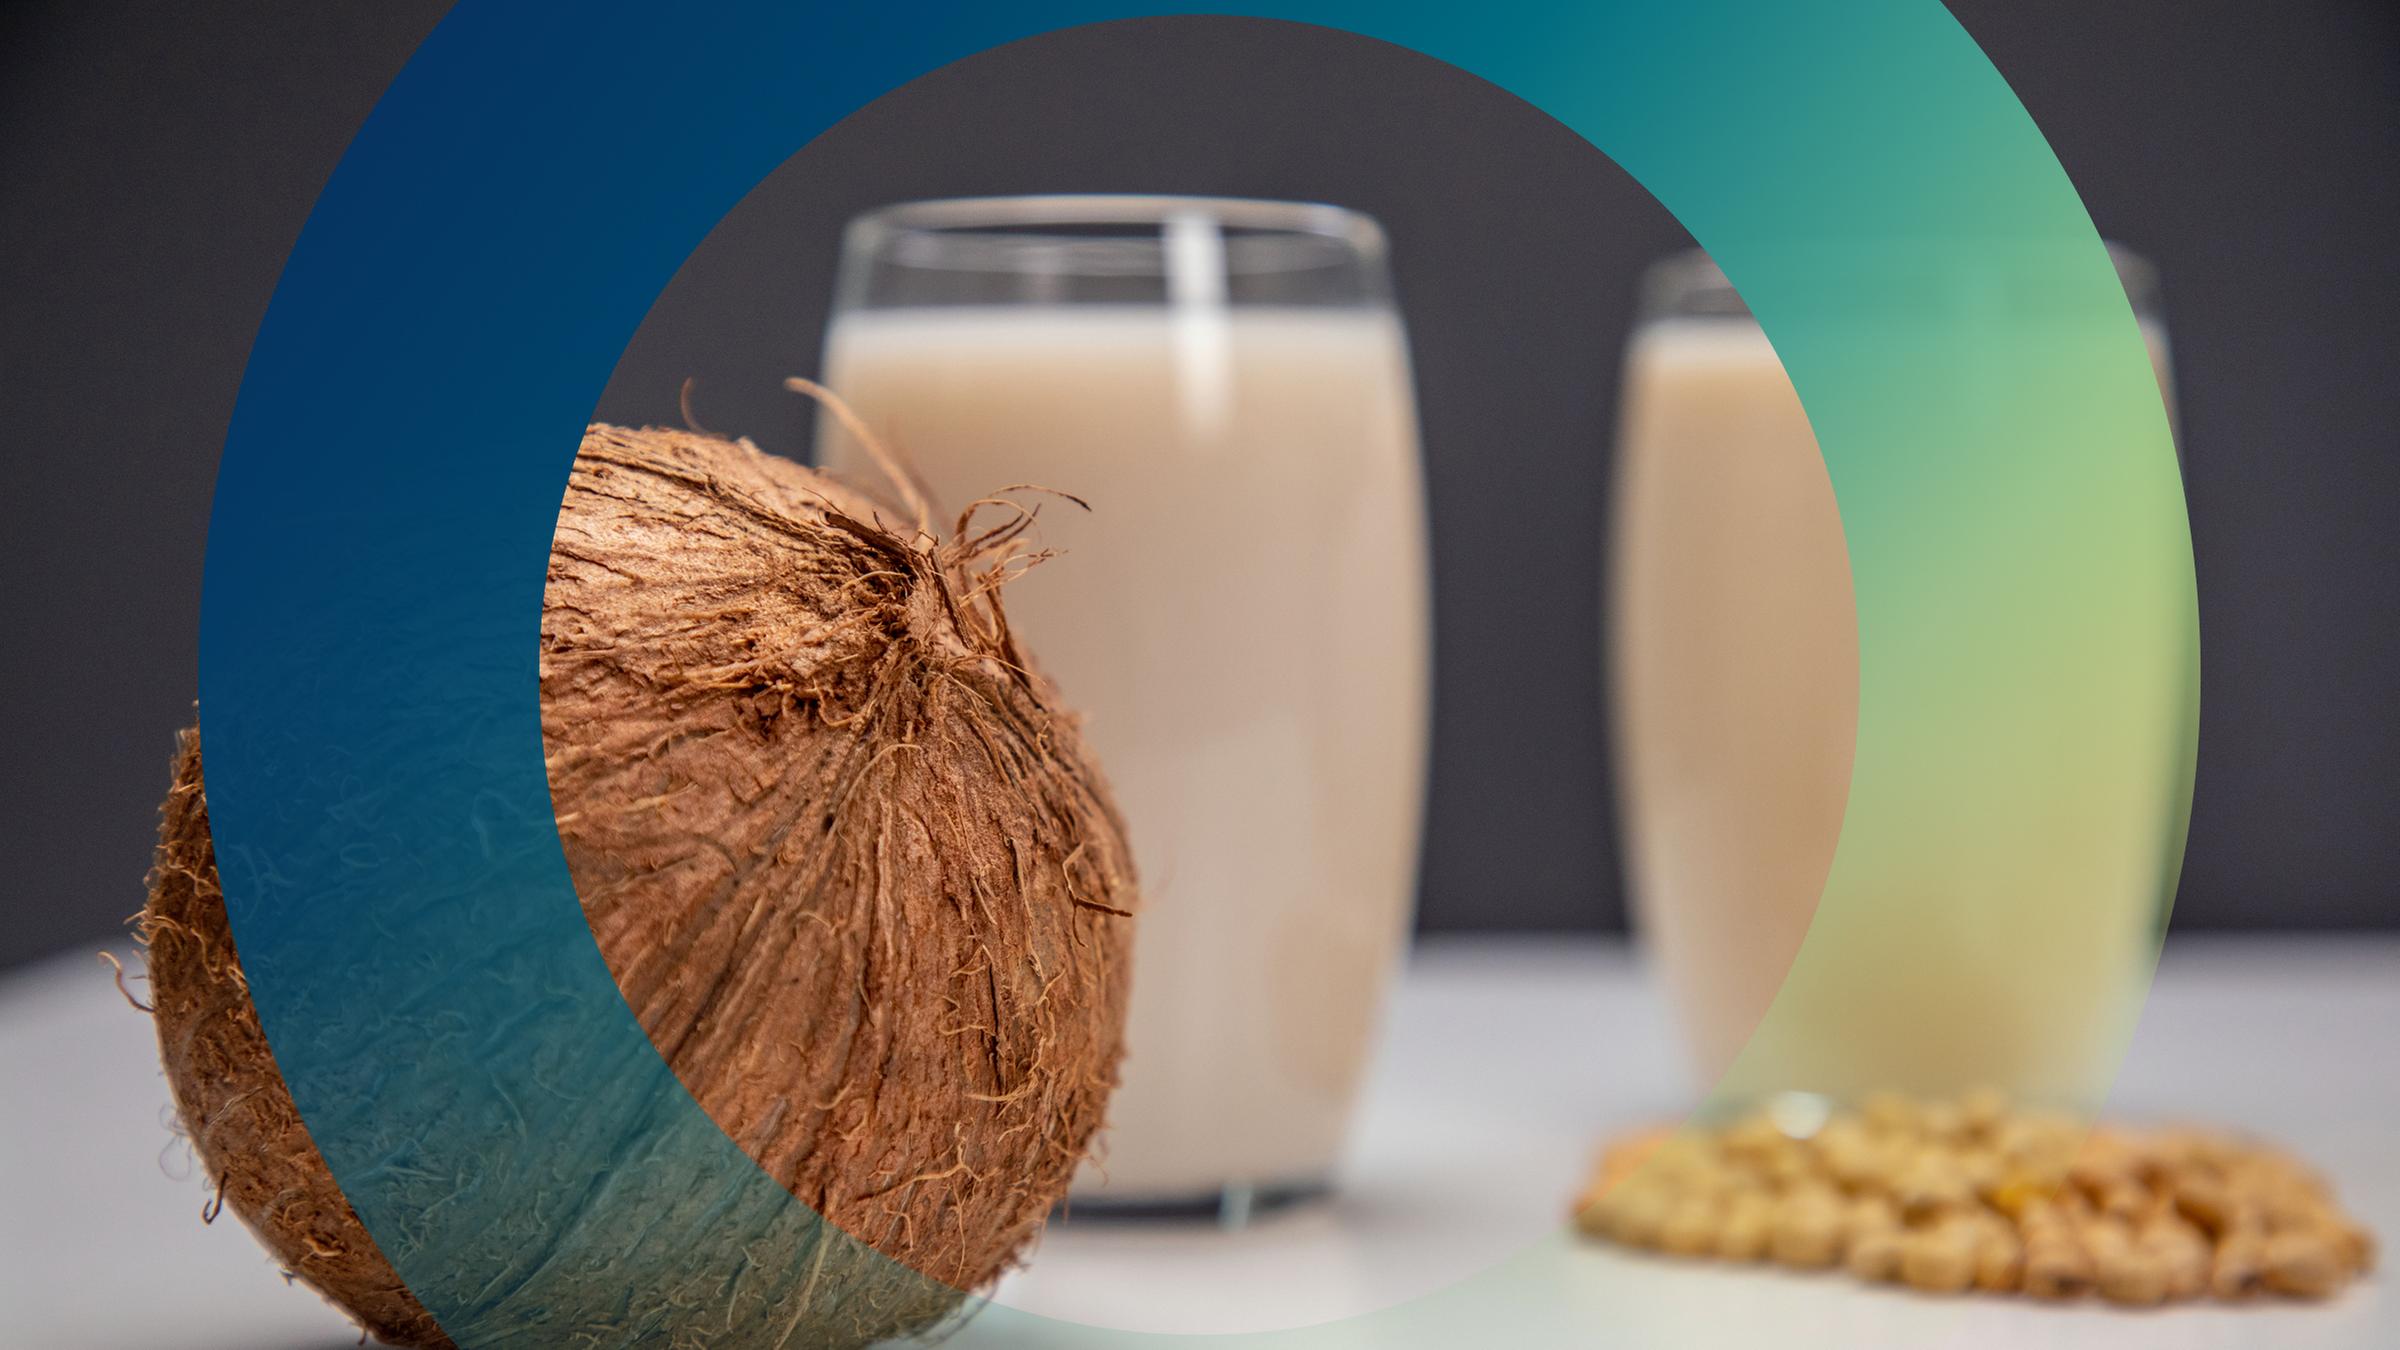 Kokosnuss und Milchersatzprodukte